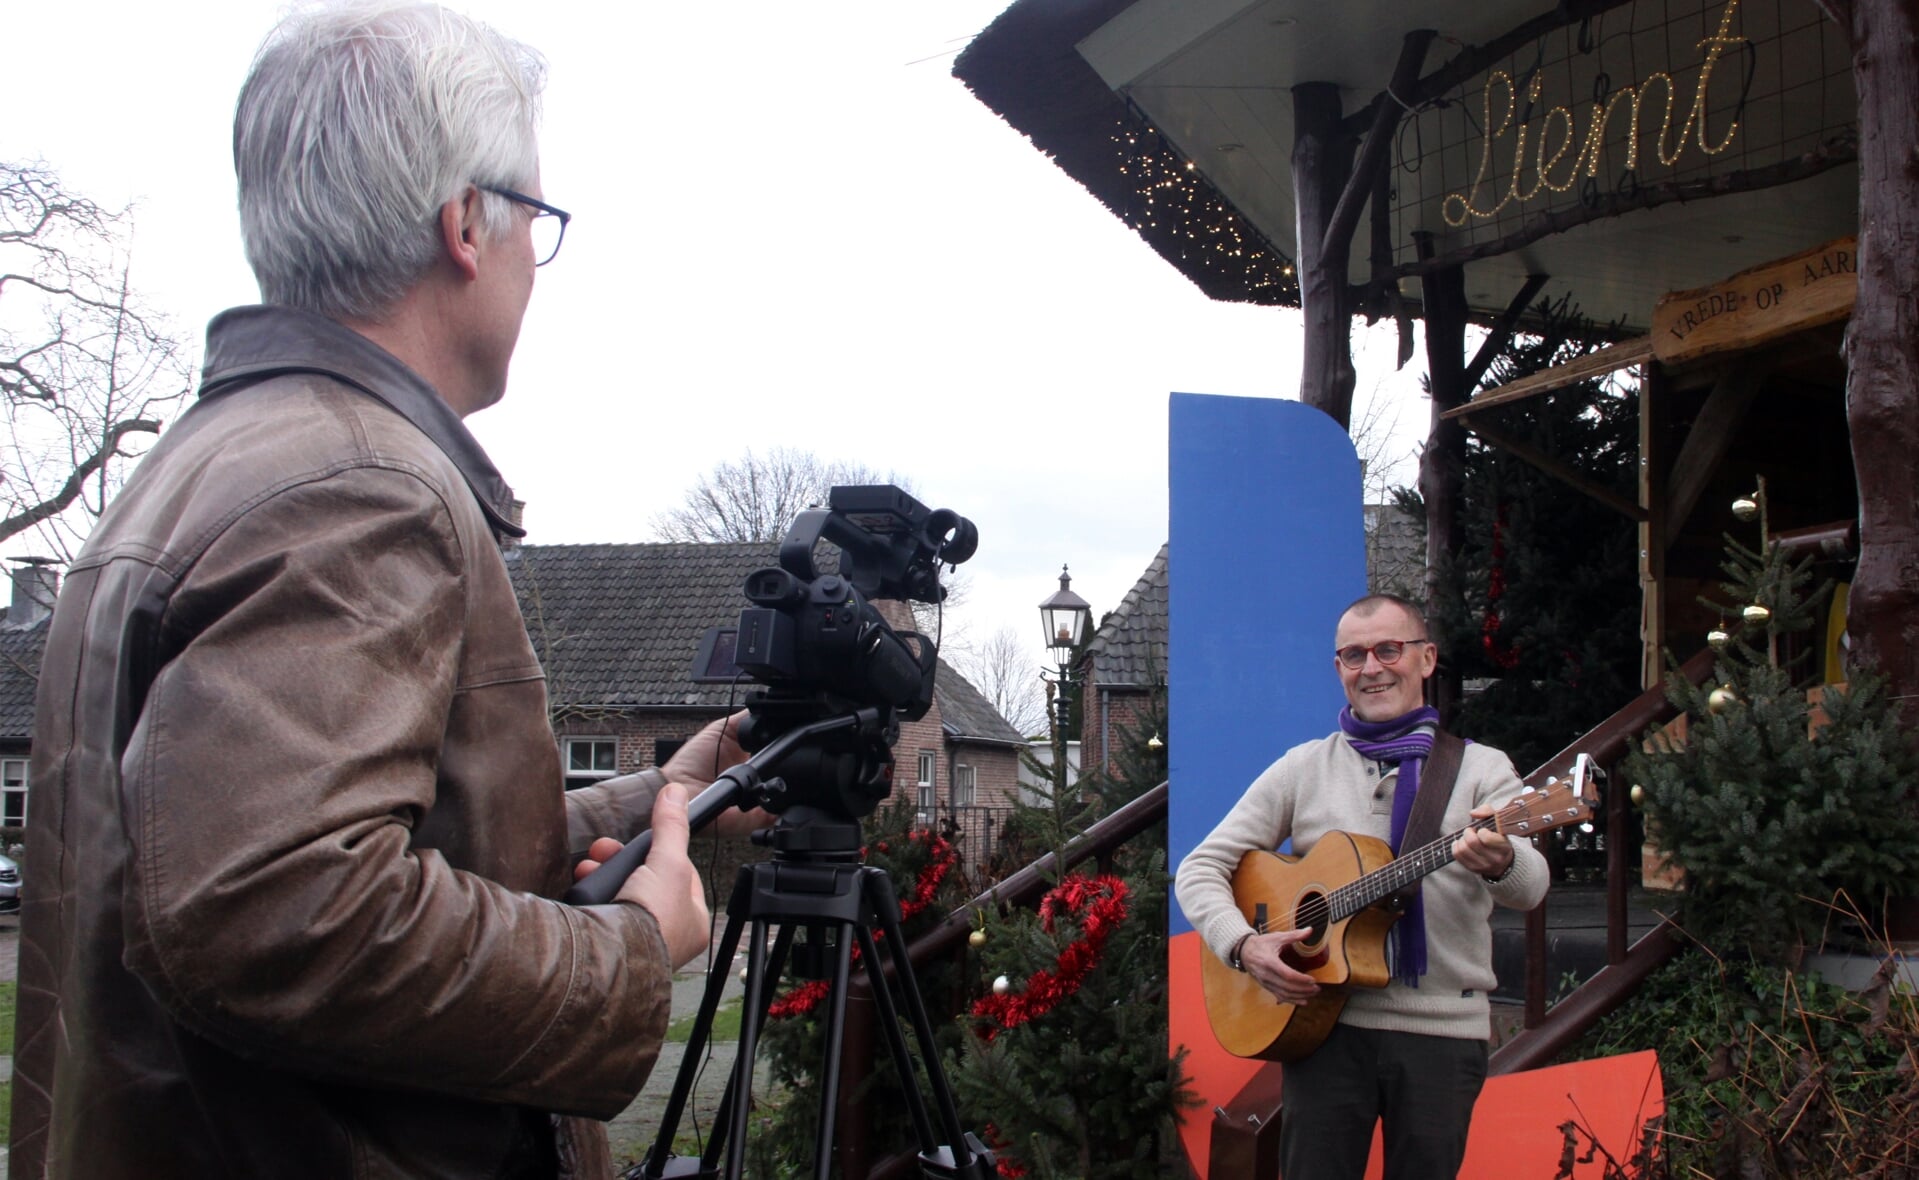 Initiatiefnemer Xaveer van Lokven (links) interviewt Jan van der Heijden voor de welkomstfilm die tijdens oudjaarsavond vanaf 20.00 uur wordt uitgezonden op Omroep Dommelland. (Foto: Gerard Schalkx).